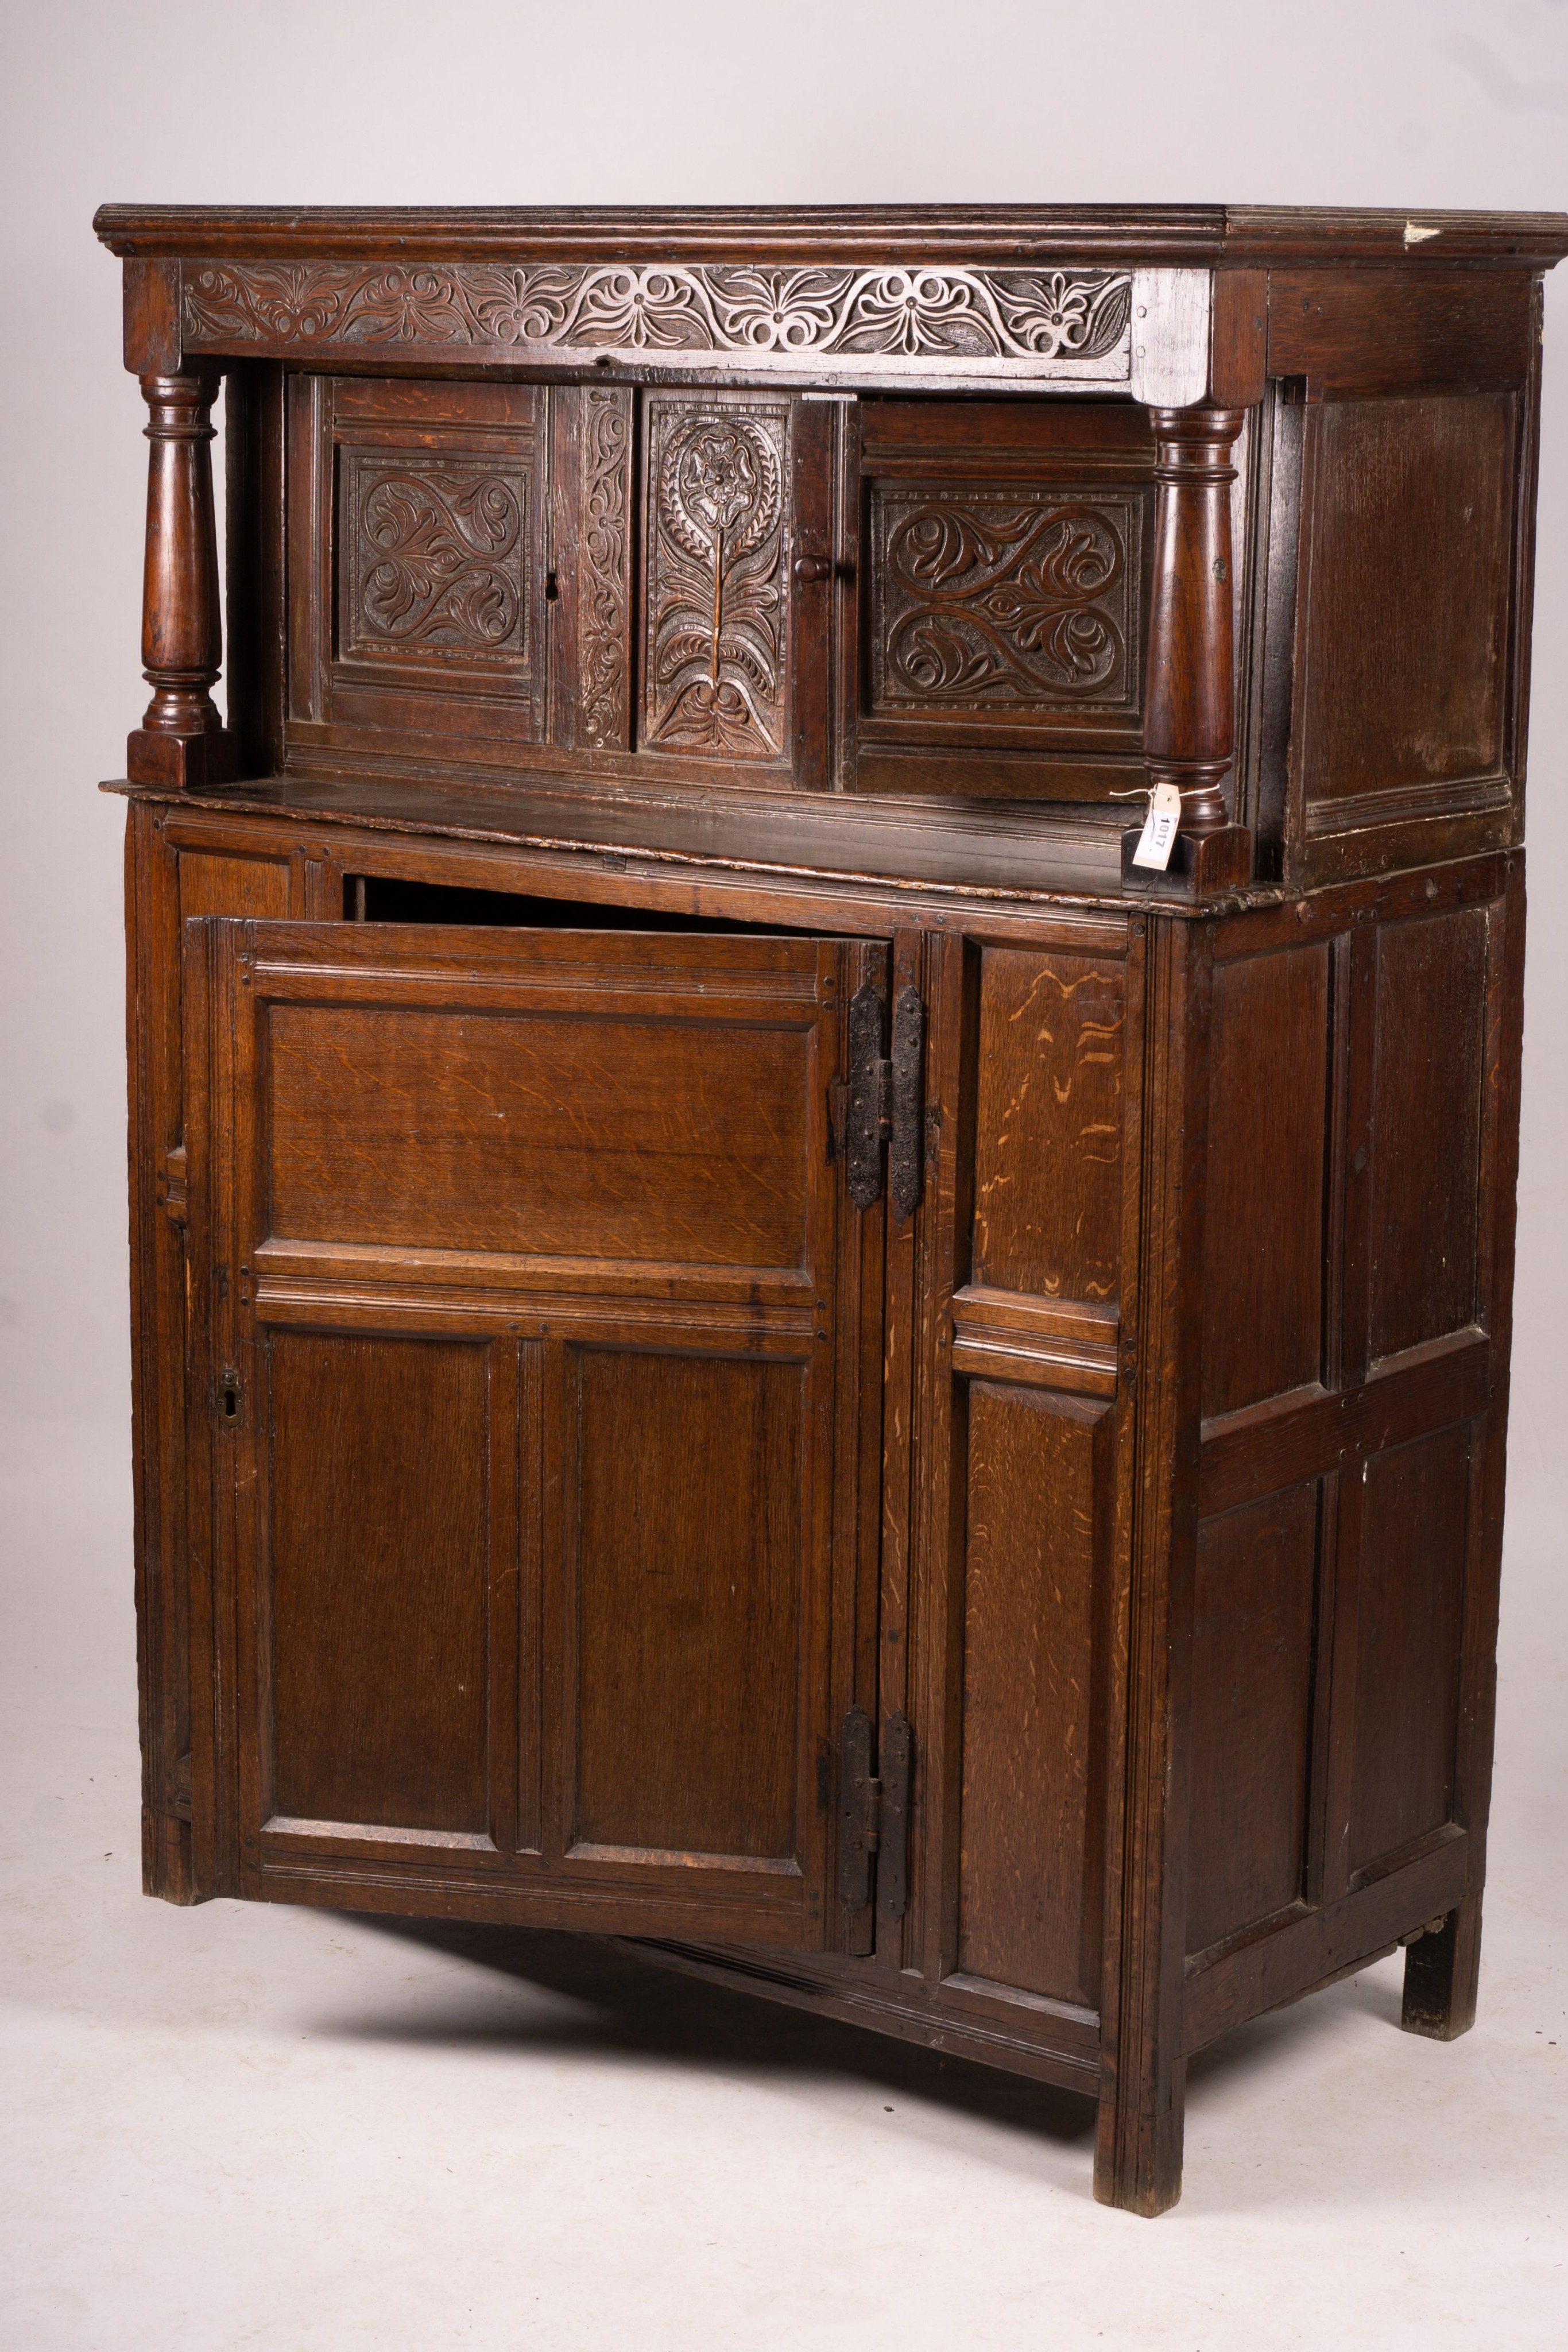 An early 18th century oak court cupboard, width 128cm, depth 59cm, height 172cm